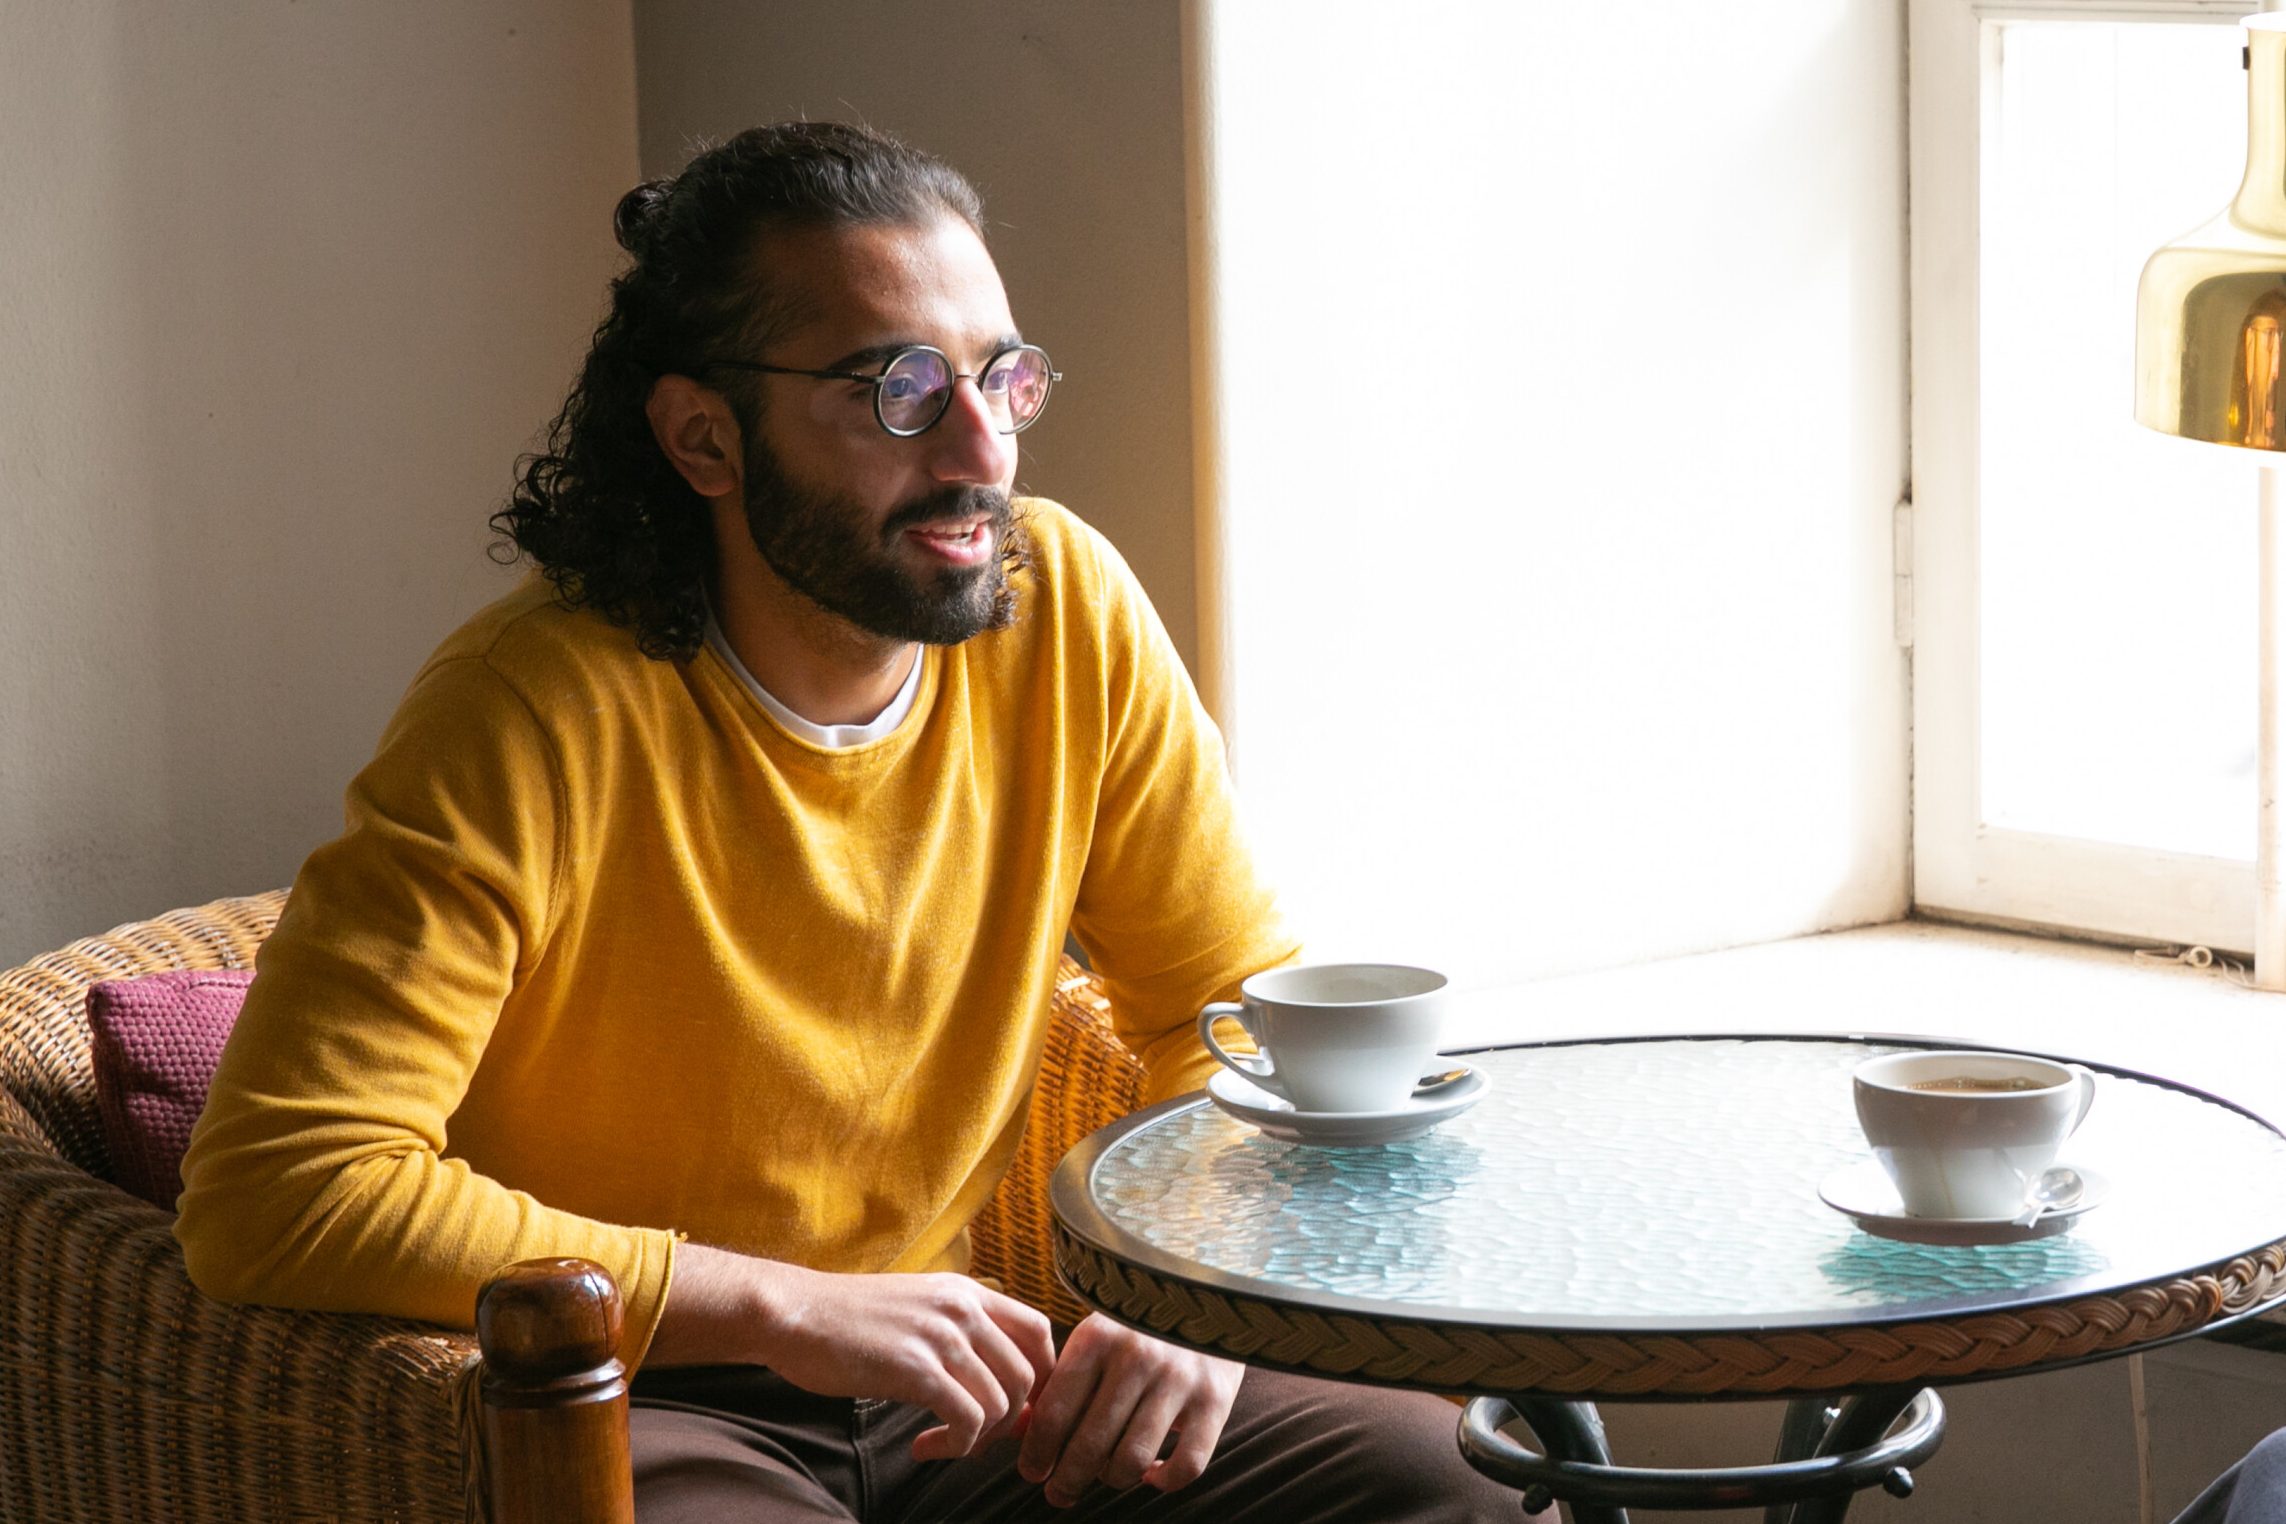  Mahdi Moghaddam in a cafe.